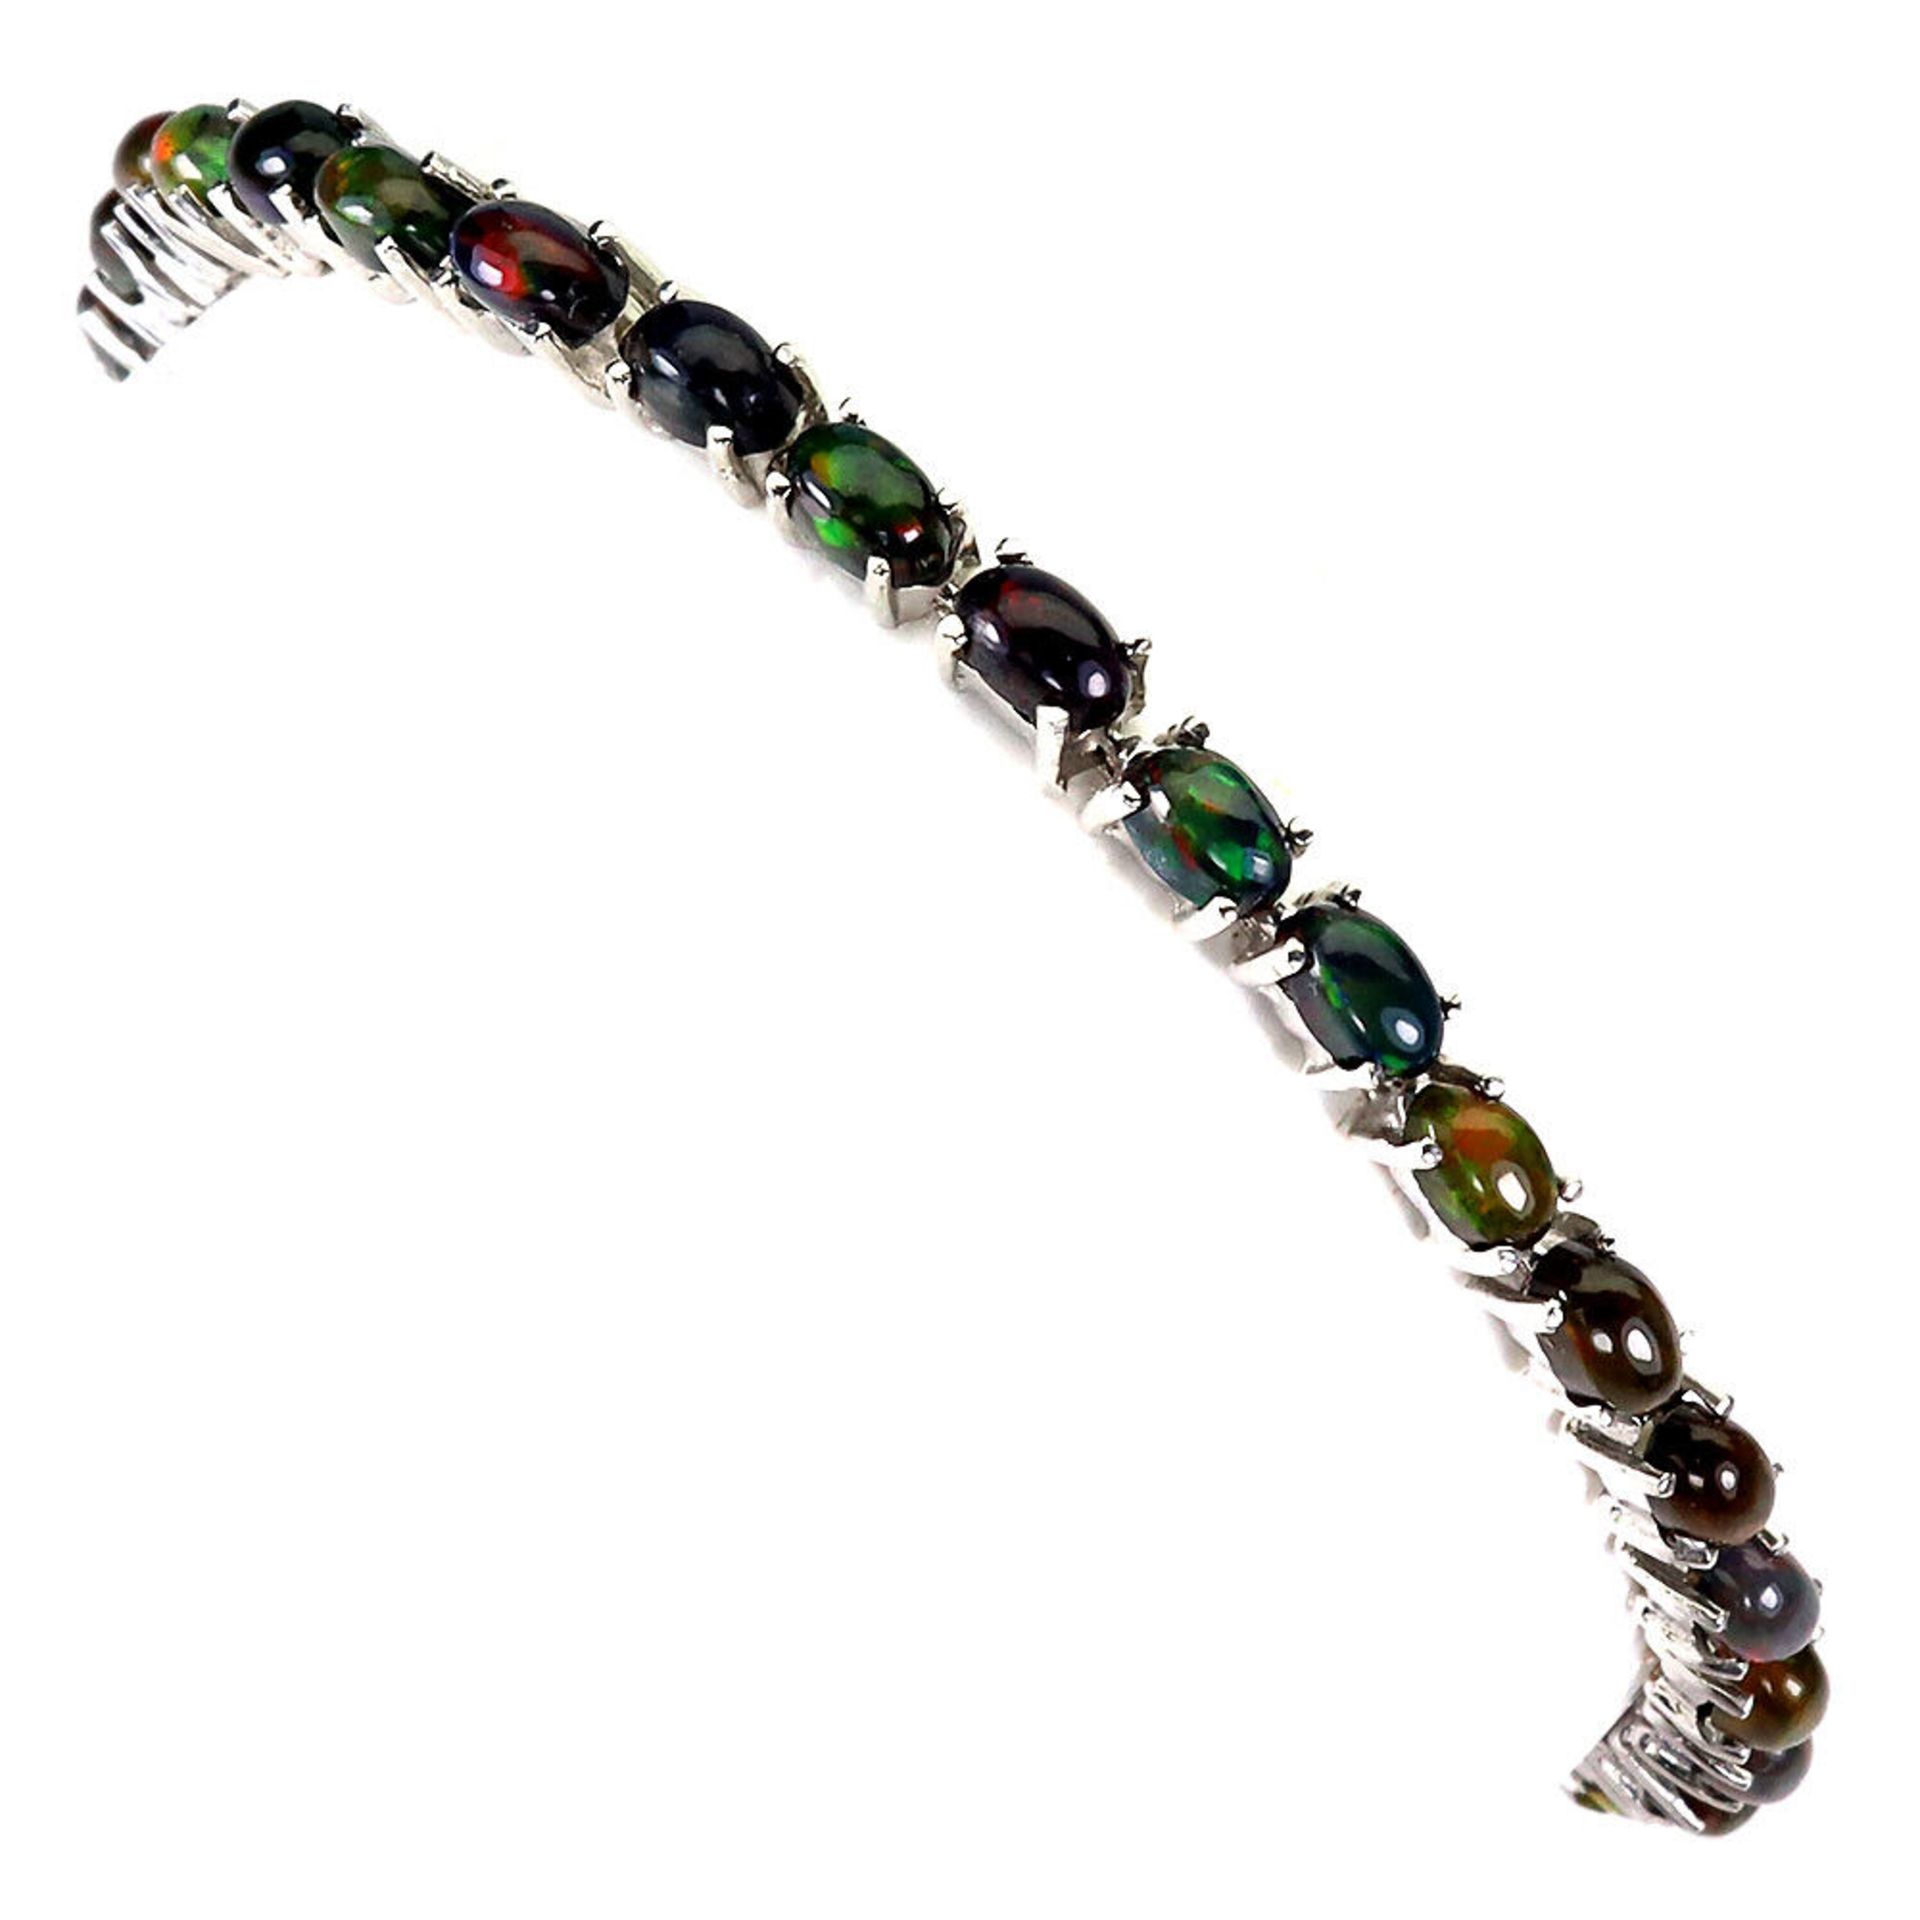 A 925 silver bracelet set with cabochon cut black opals, L. 18cm. - Image 2 of 3